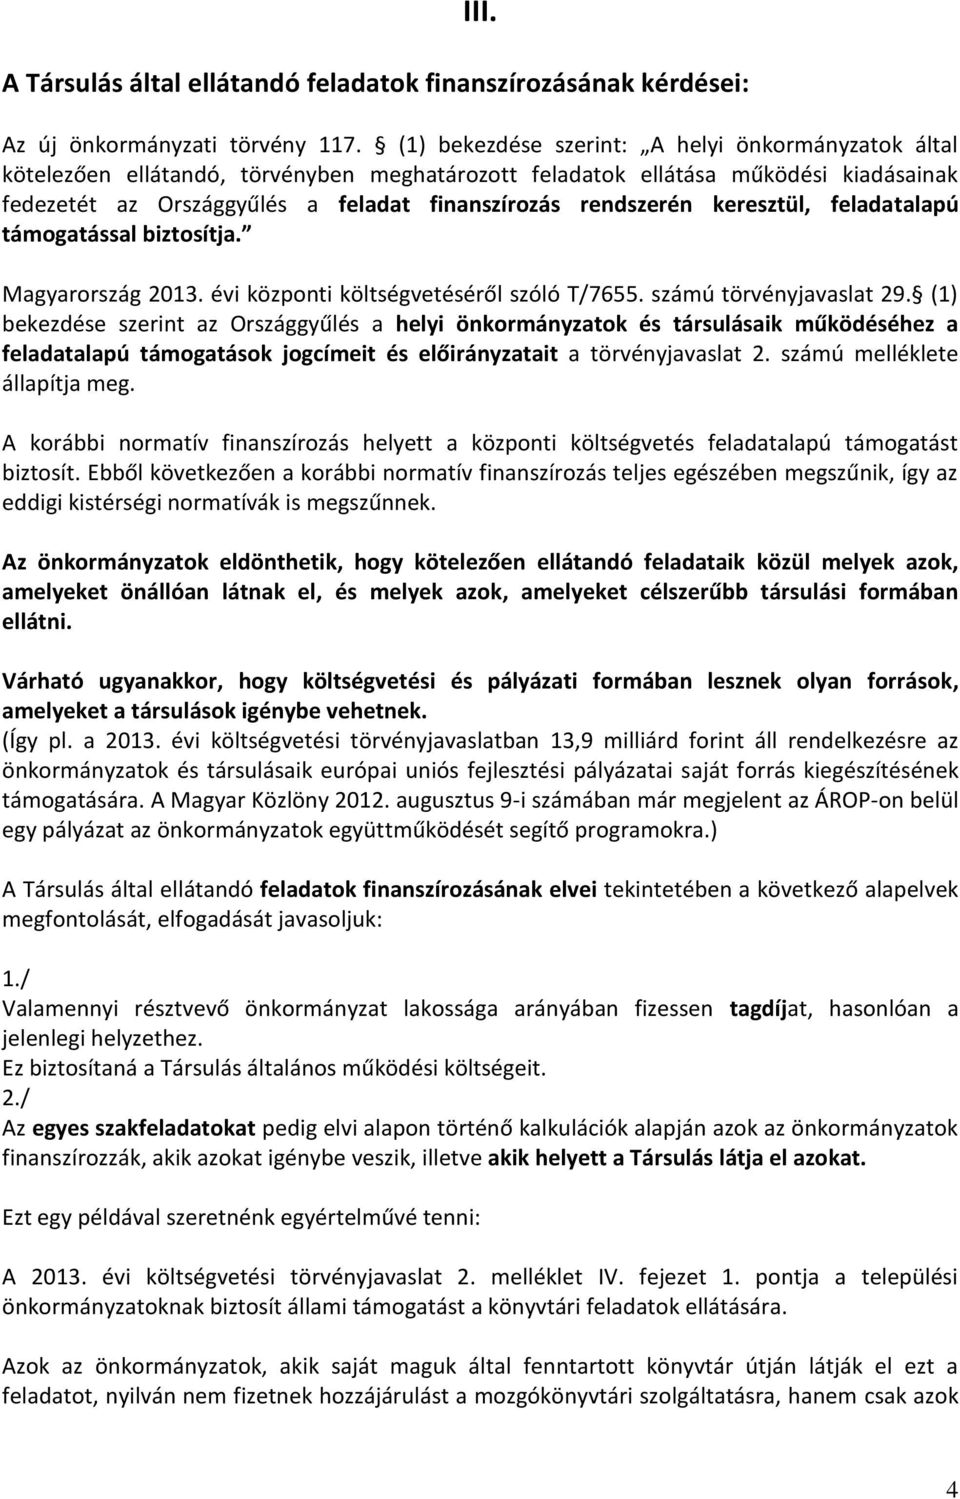 keresztül, feladatalapú támogatással biztosítja. Magyarország 2013. évi központi költségvetéséről szóló T/7655. számú törvényjavaslat 29.